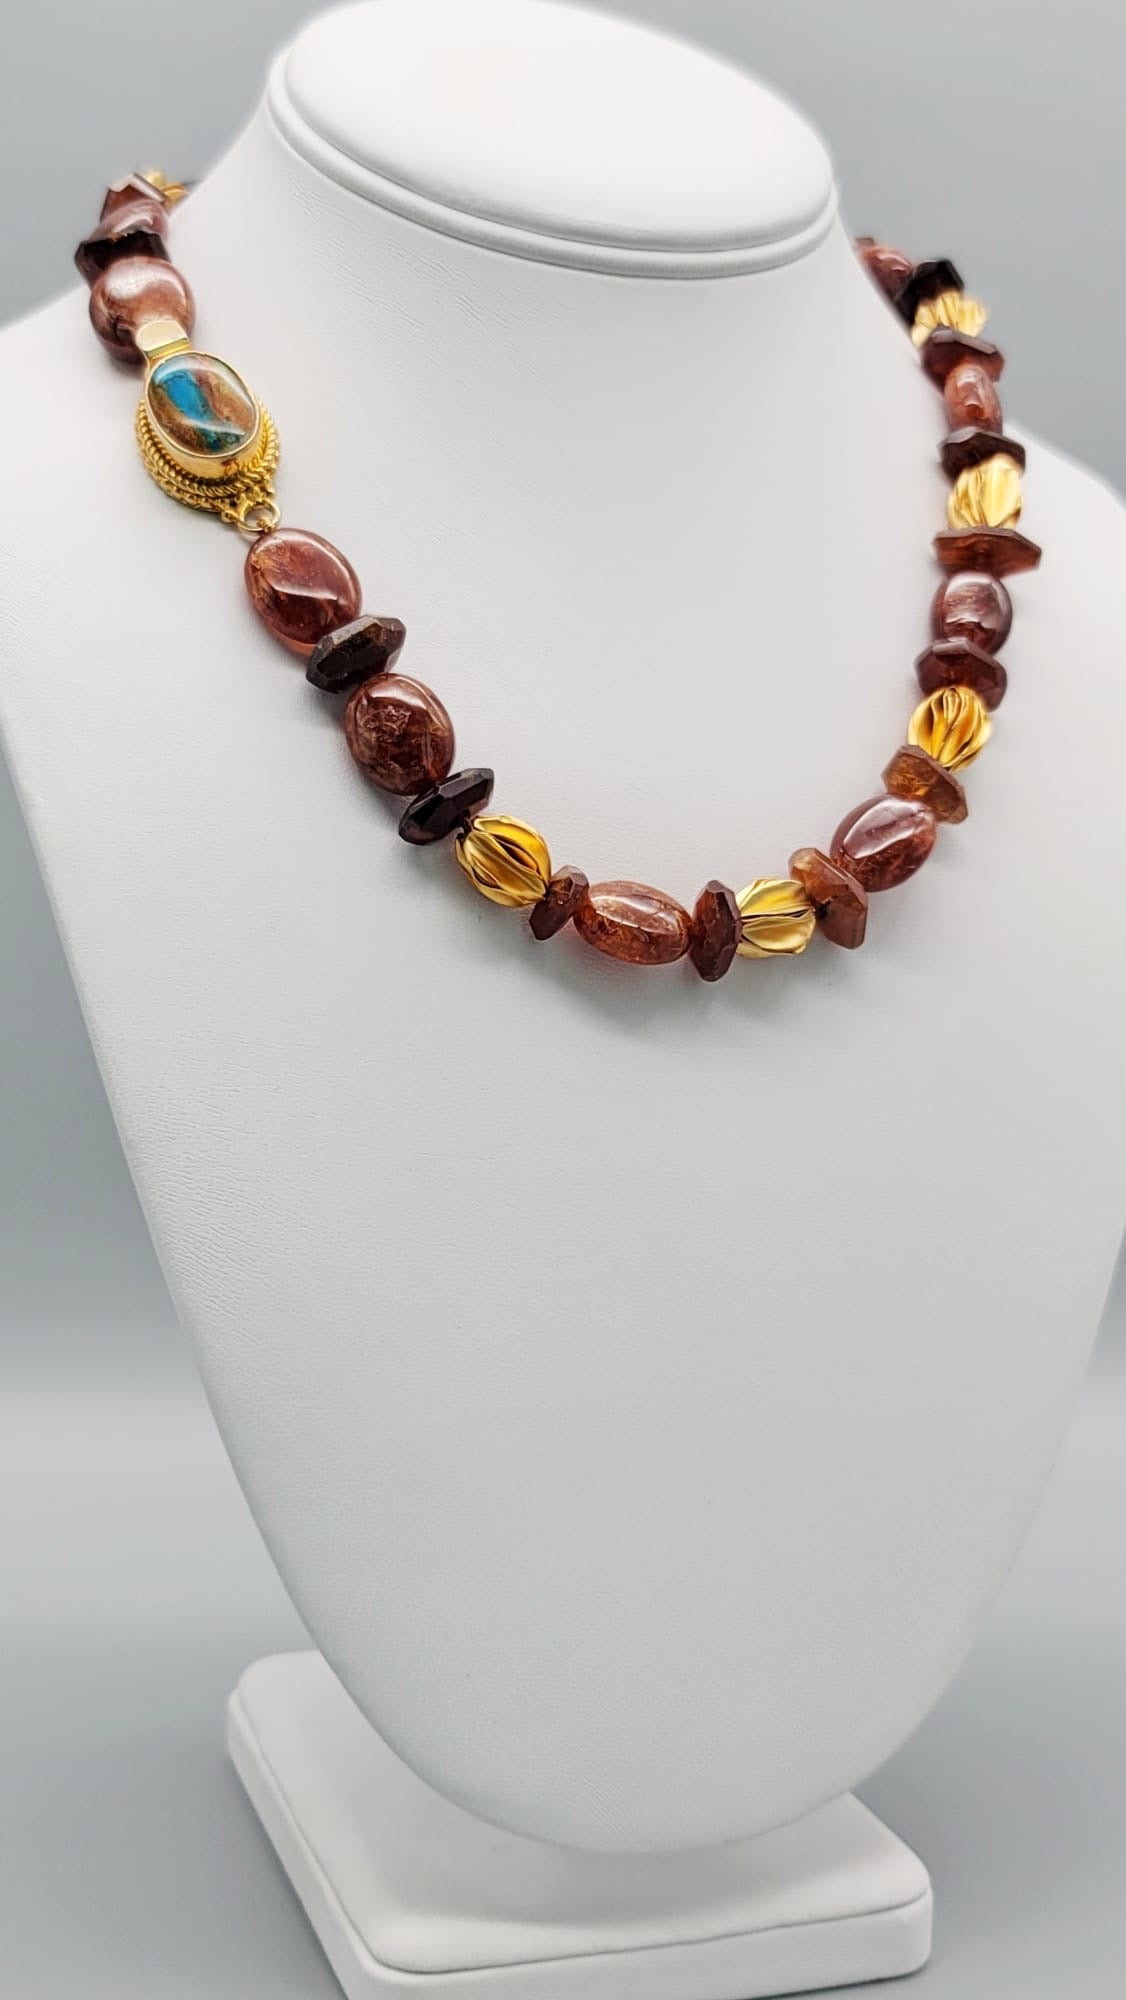 Unique en son genre

Grenat hessonite serti dans un collier classique à fil unique. La couleur rouge-brun exceptionnellement riche des perles polies, mélangée à la netteté des rondelles plus profondément colorées, se marie extrêmement bien avec la